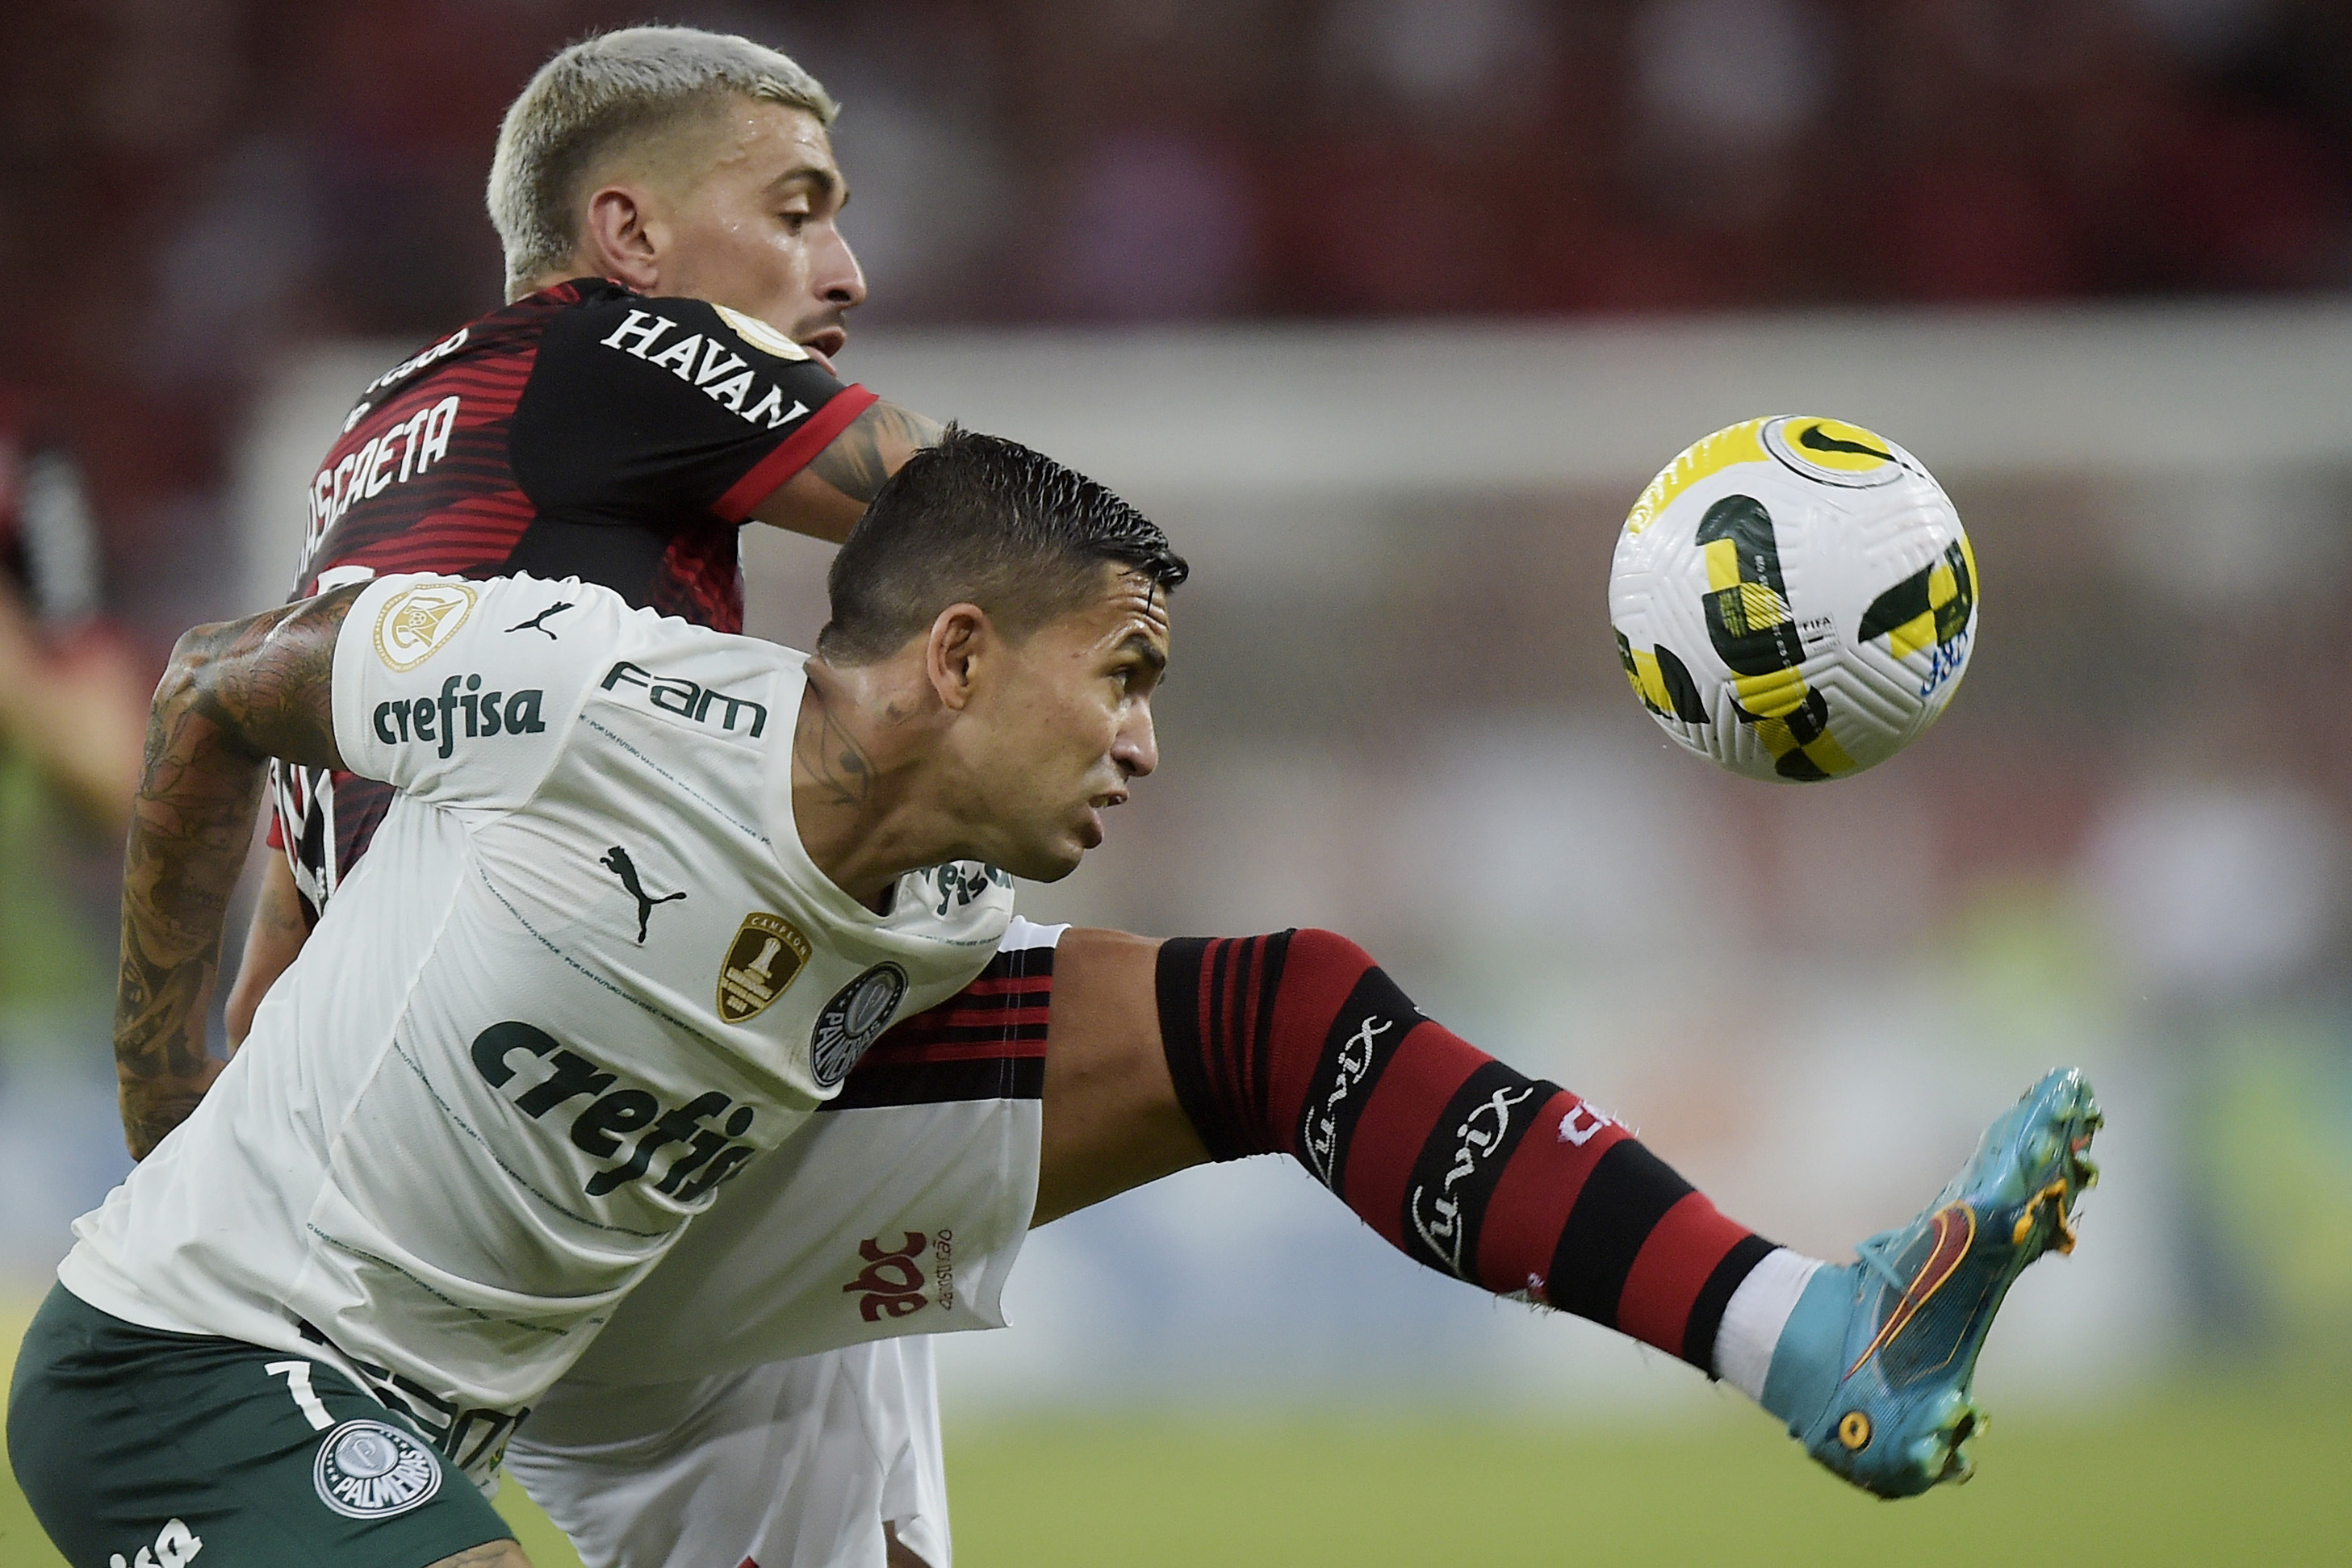 Transmissão de jogo do Flamengo na Internet causa impacto na rede